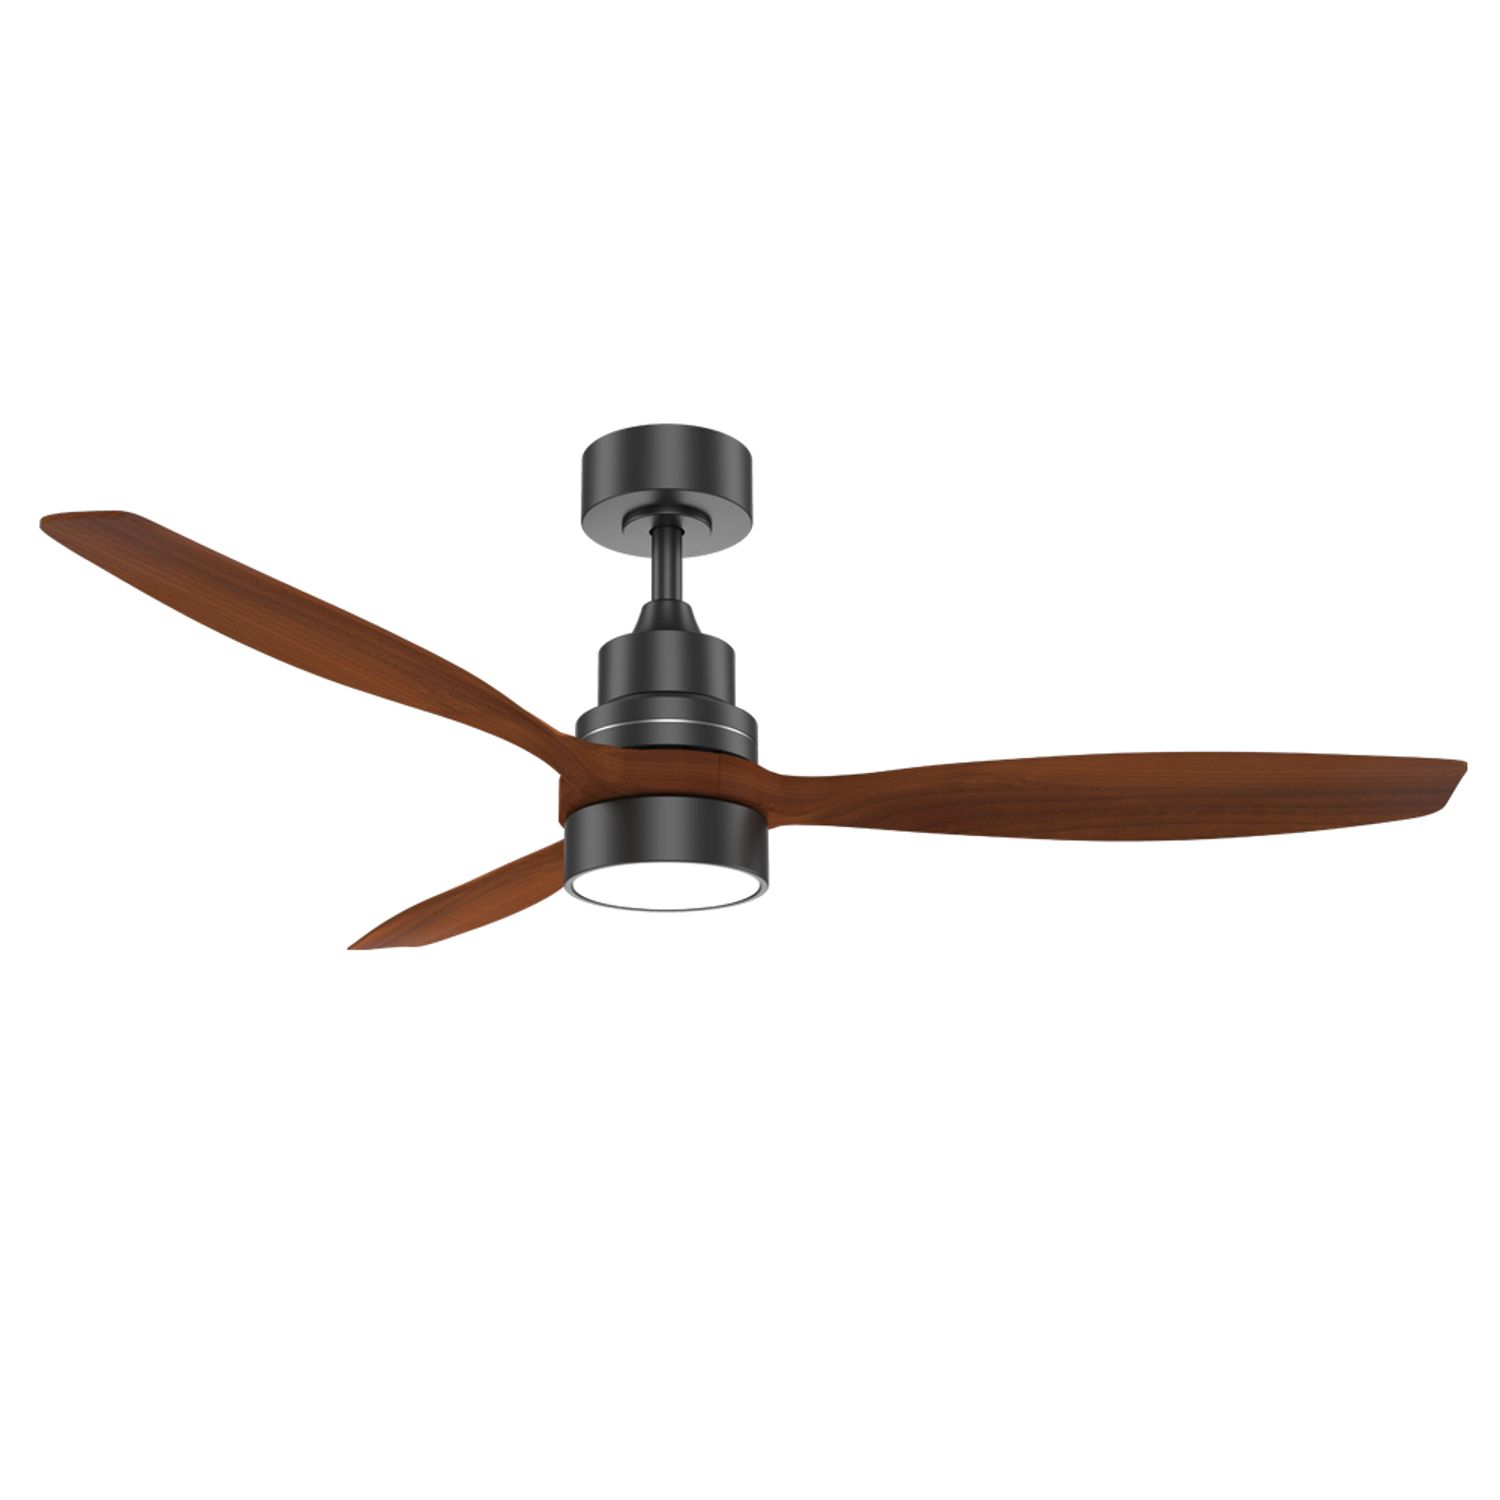 3 blade 52 inch modern wood fan with light KBS wholesale